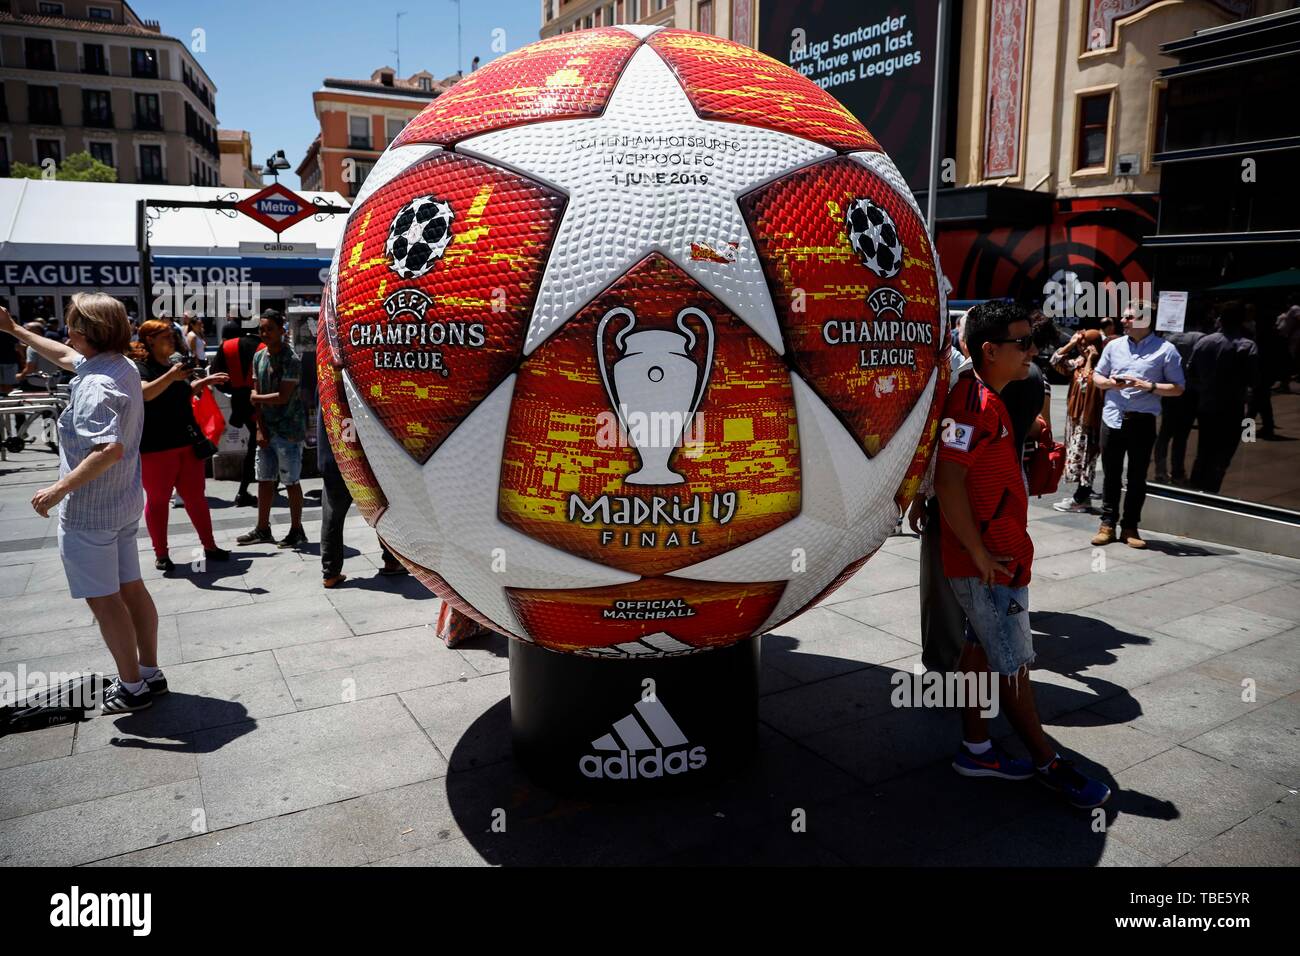 Madrid, España. Desde el de junio, 2019. Un de la de Campeones de la UEFA en la bola de la zona de fans en la Puerta del Sol antes